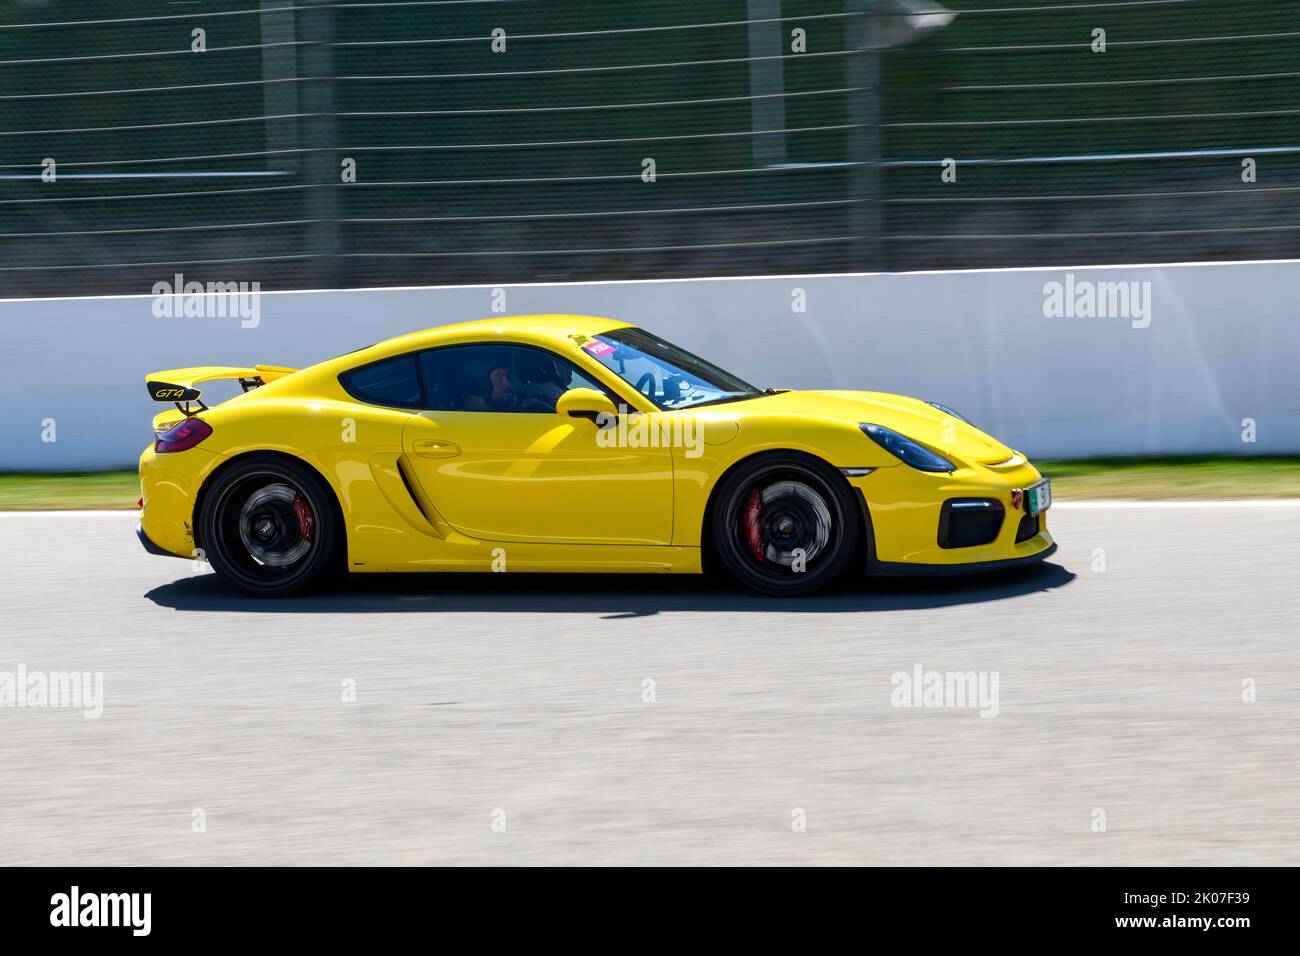 Voiture de course jaune voiture de sport Porsche Cayman GT4 course à grande vitesse à la vitesse maximale pendant le jour de piste sur la ligne droite de début-fin de course, FIA Formule 1 Banque D'Images